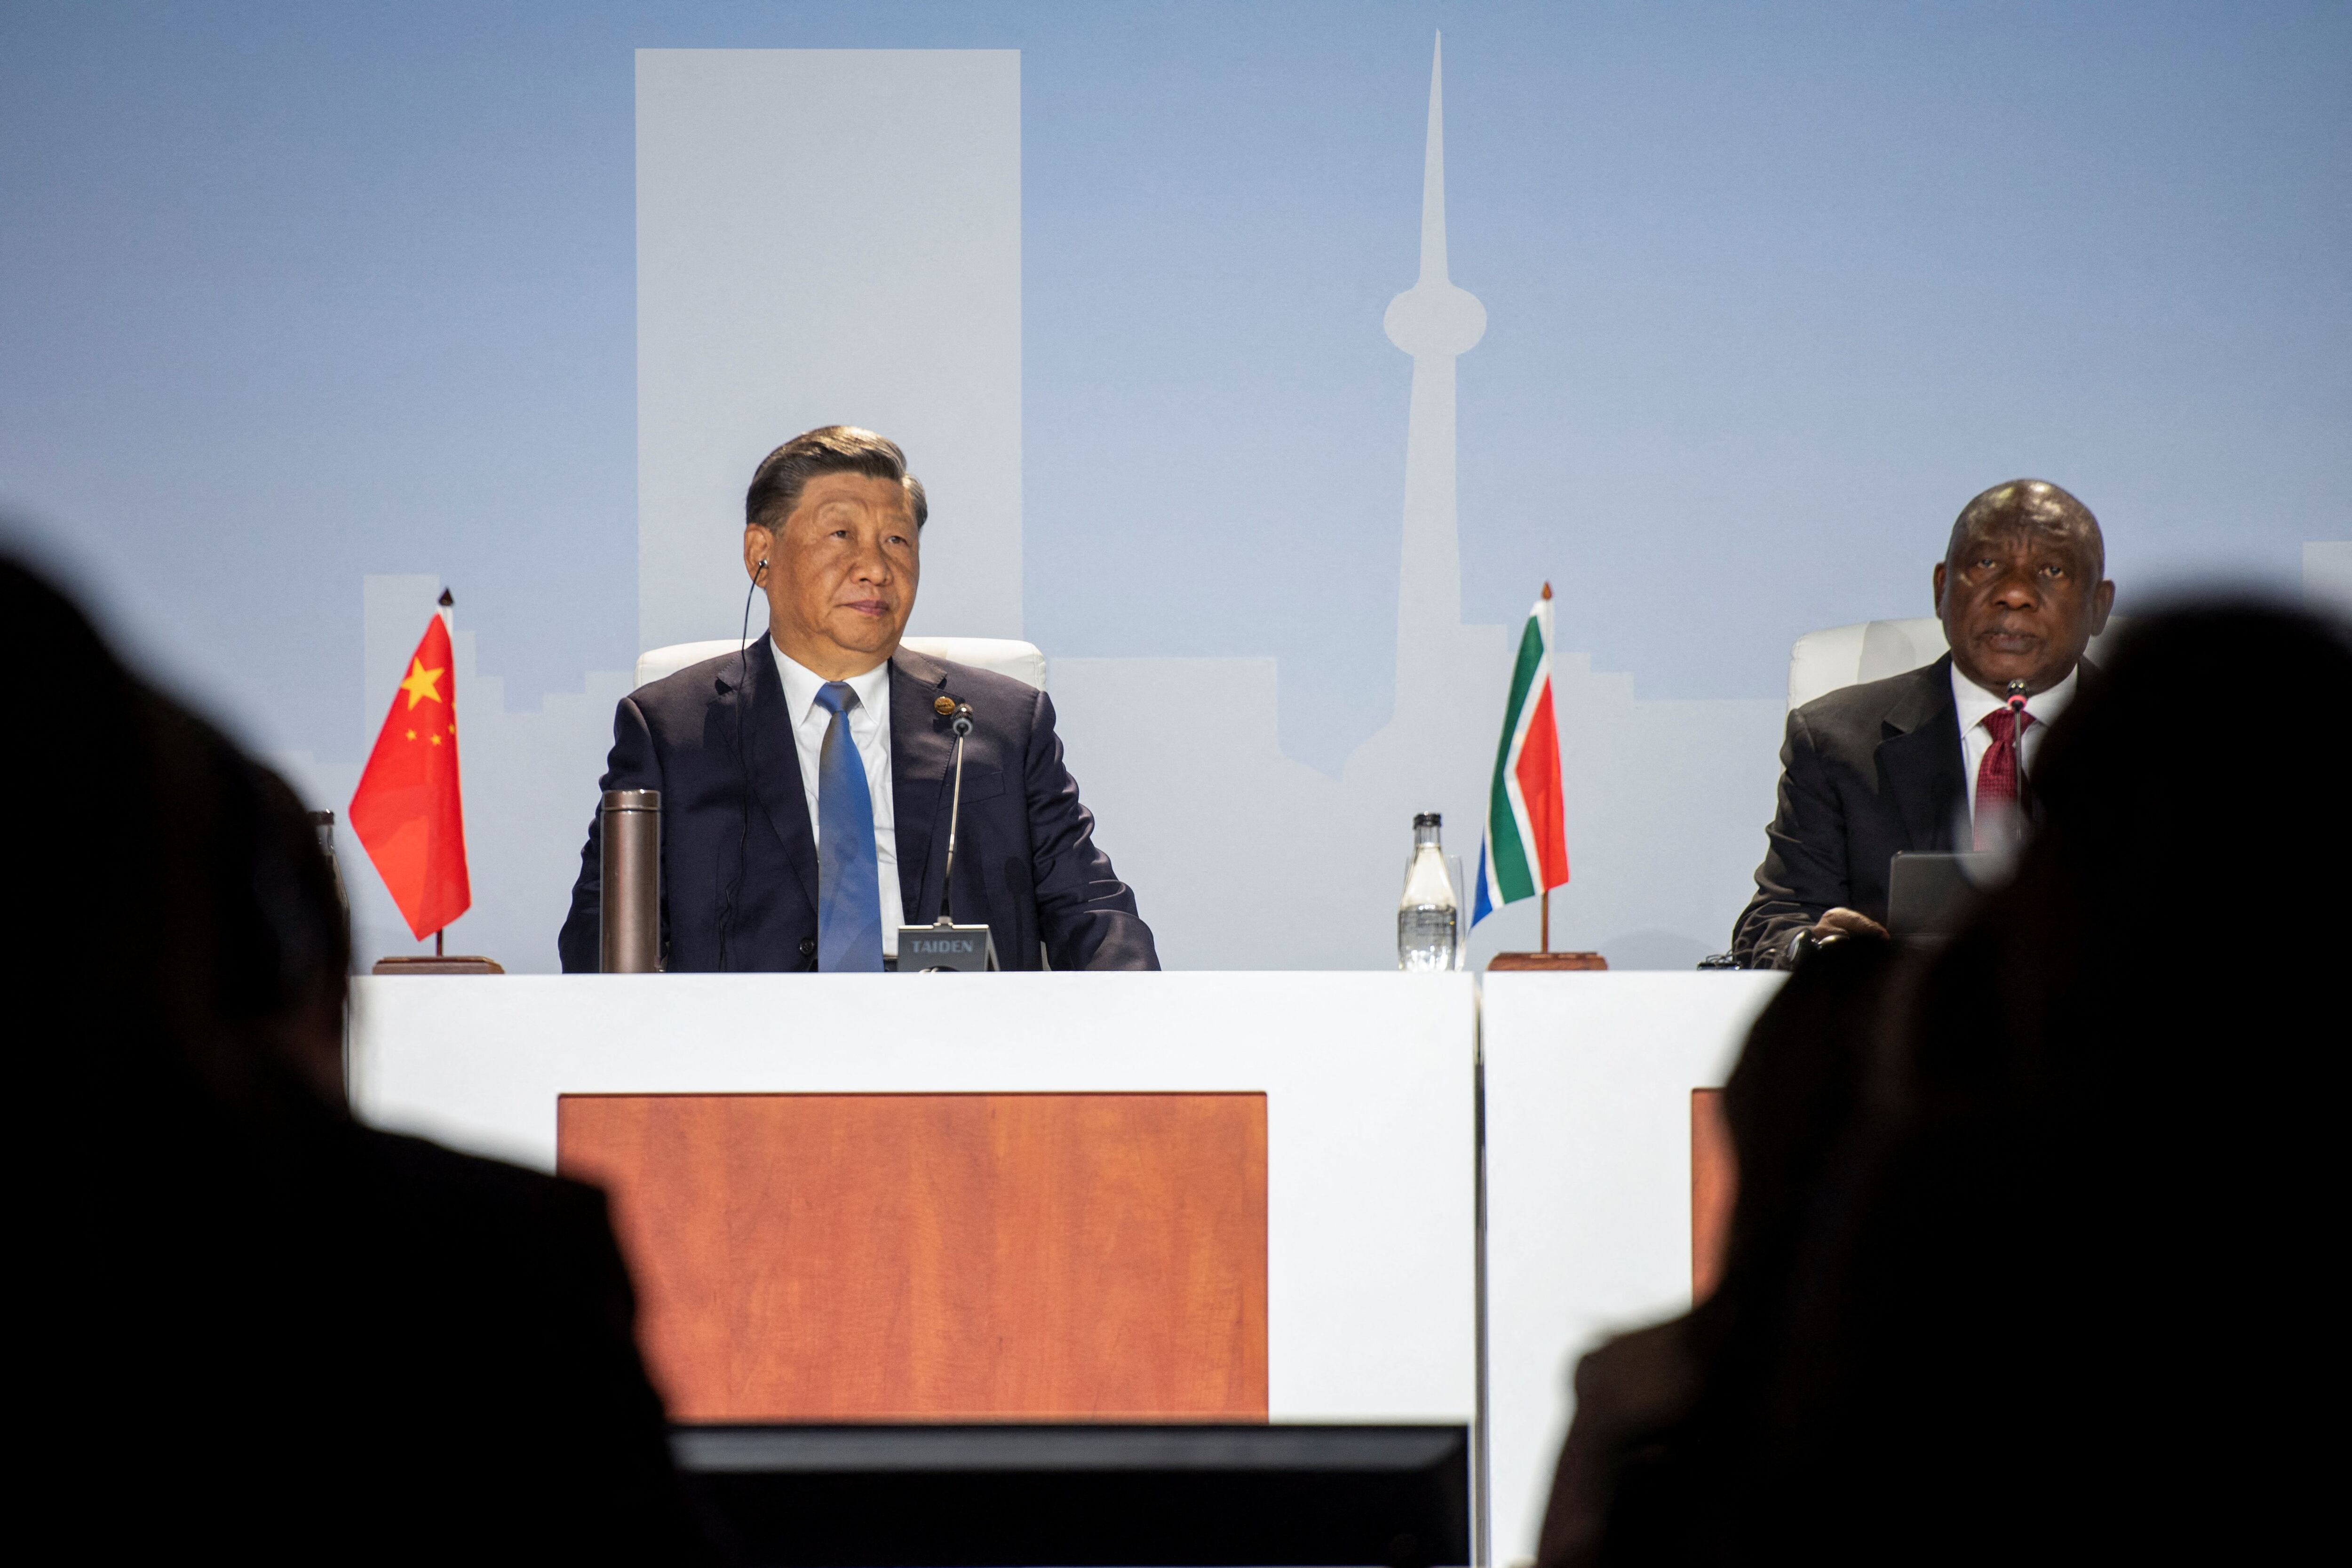 La expansión del bloque era un objetivo del presidente chino Xi Jinping (REUTERS/Alet Pretorius)